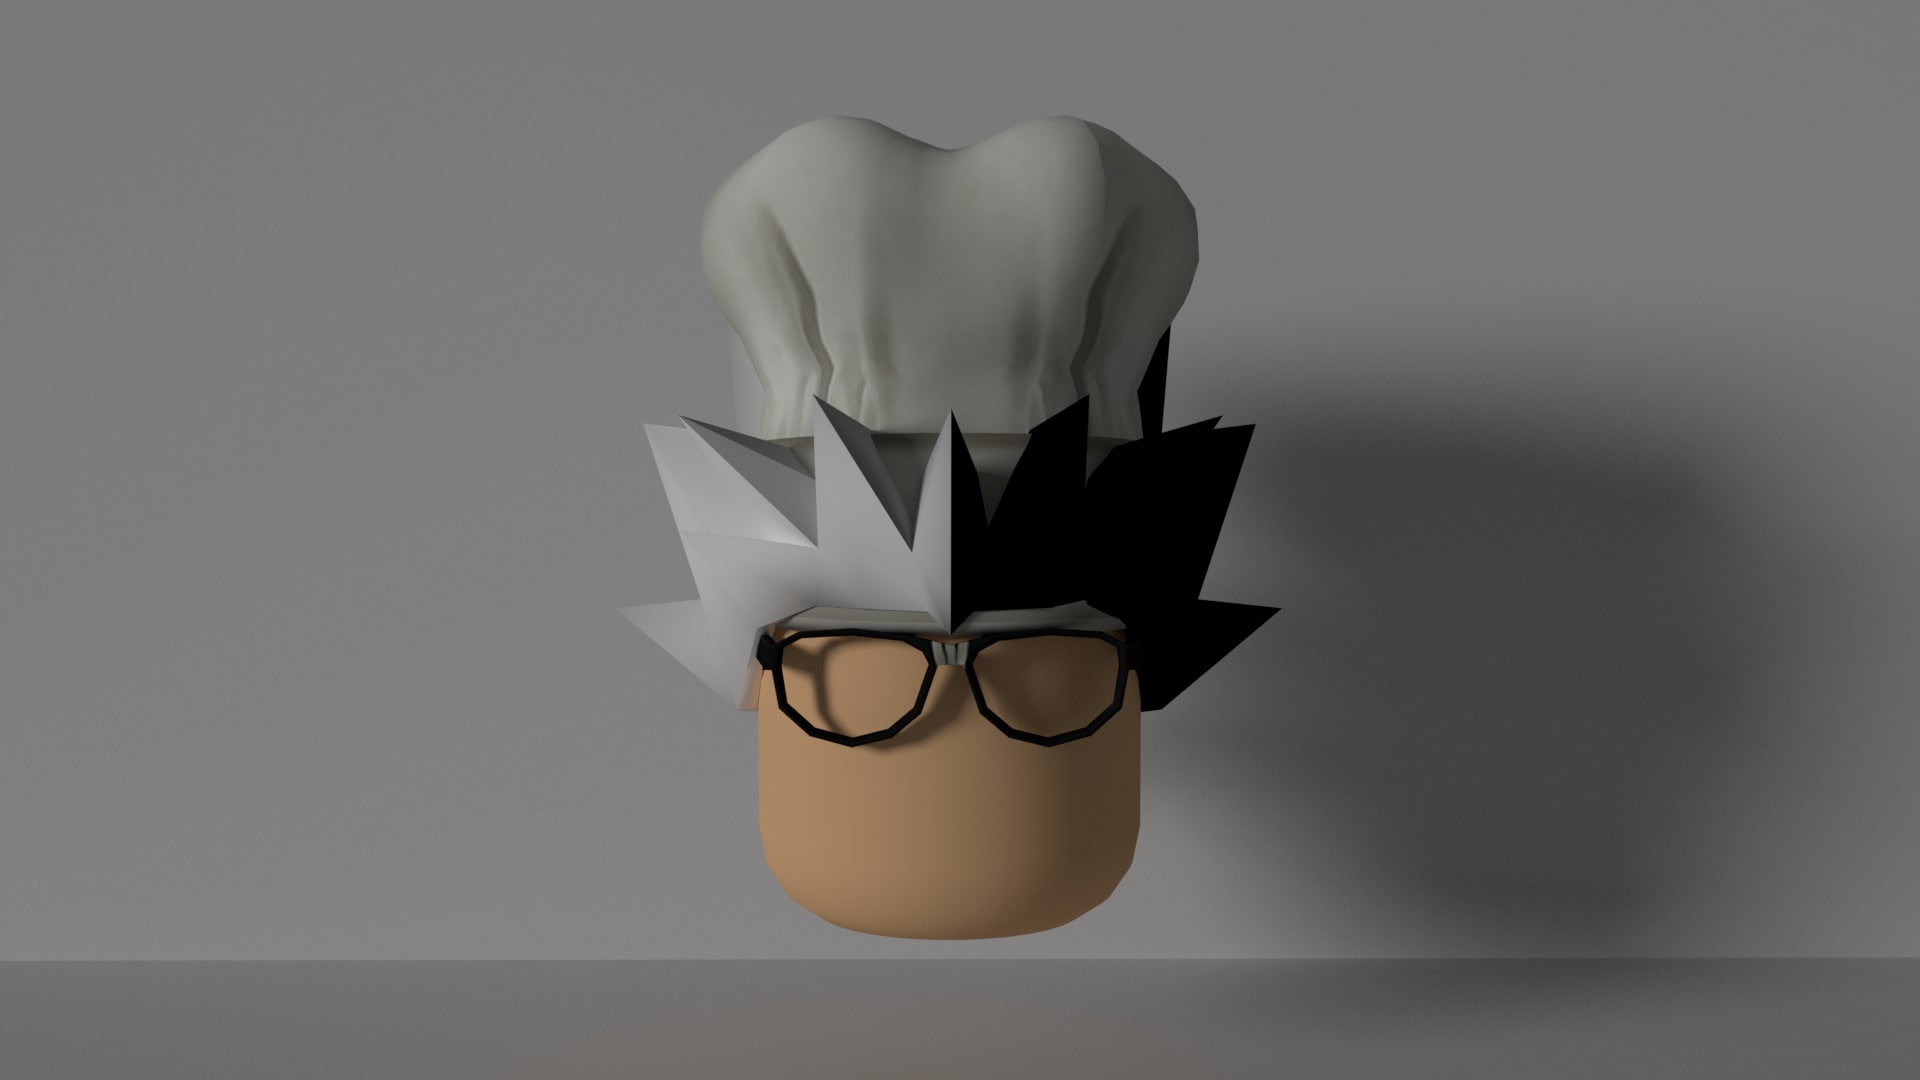 create a custom roblox head logo of your avatar